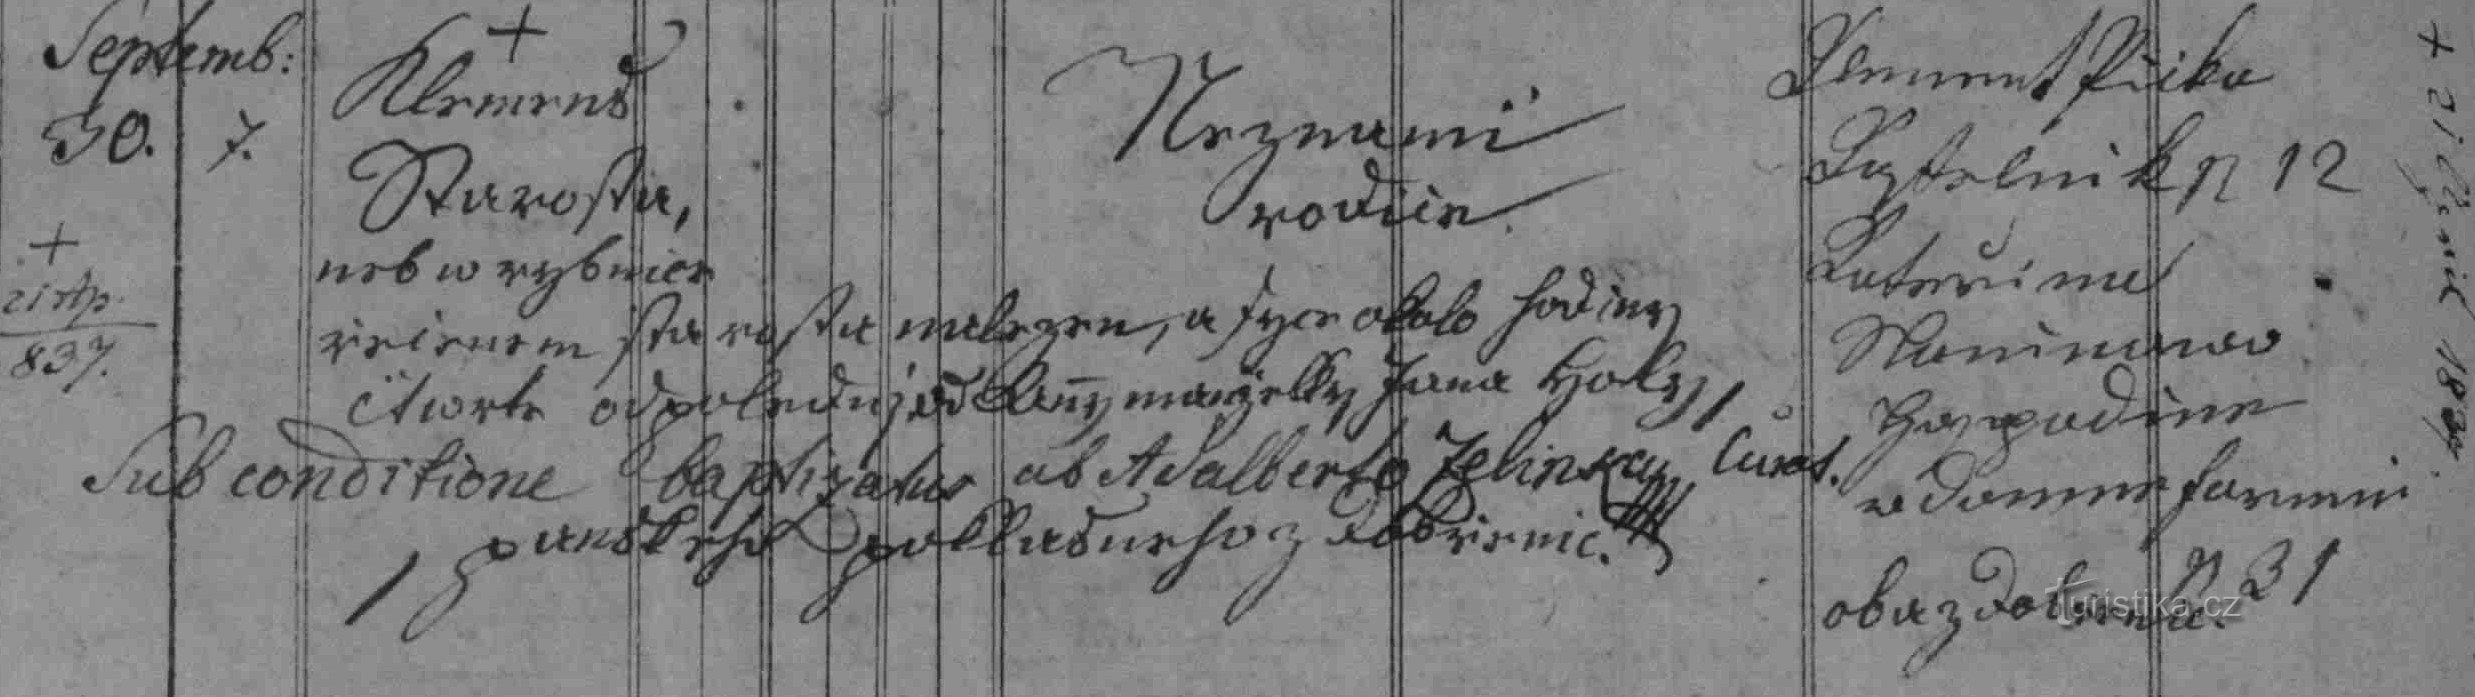 Dobření księga metrykalna chrztu starosty Klemensa z 1836 r.